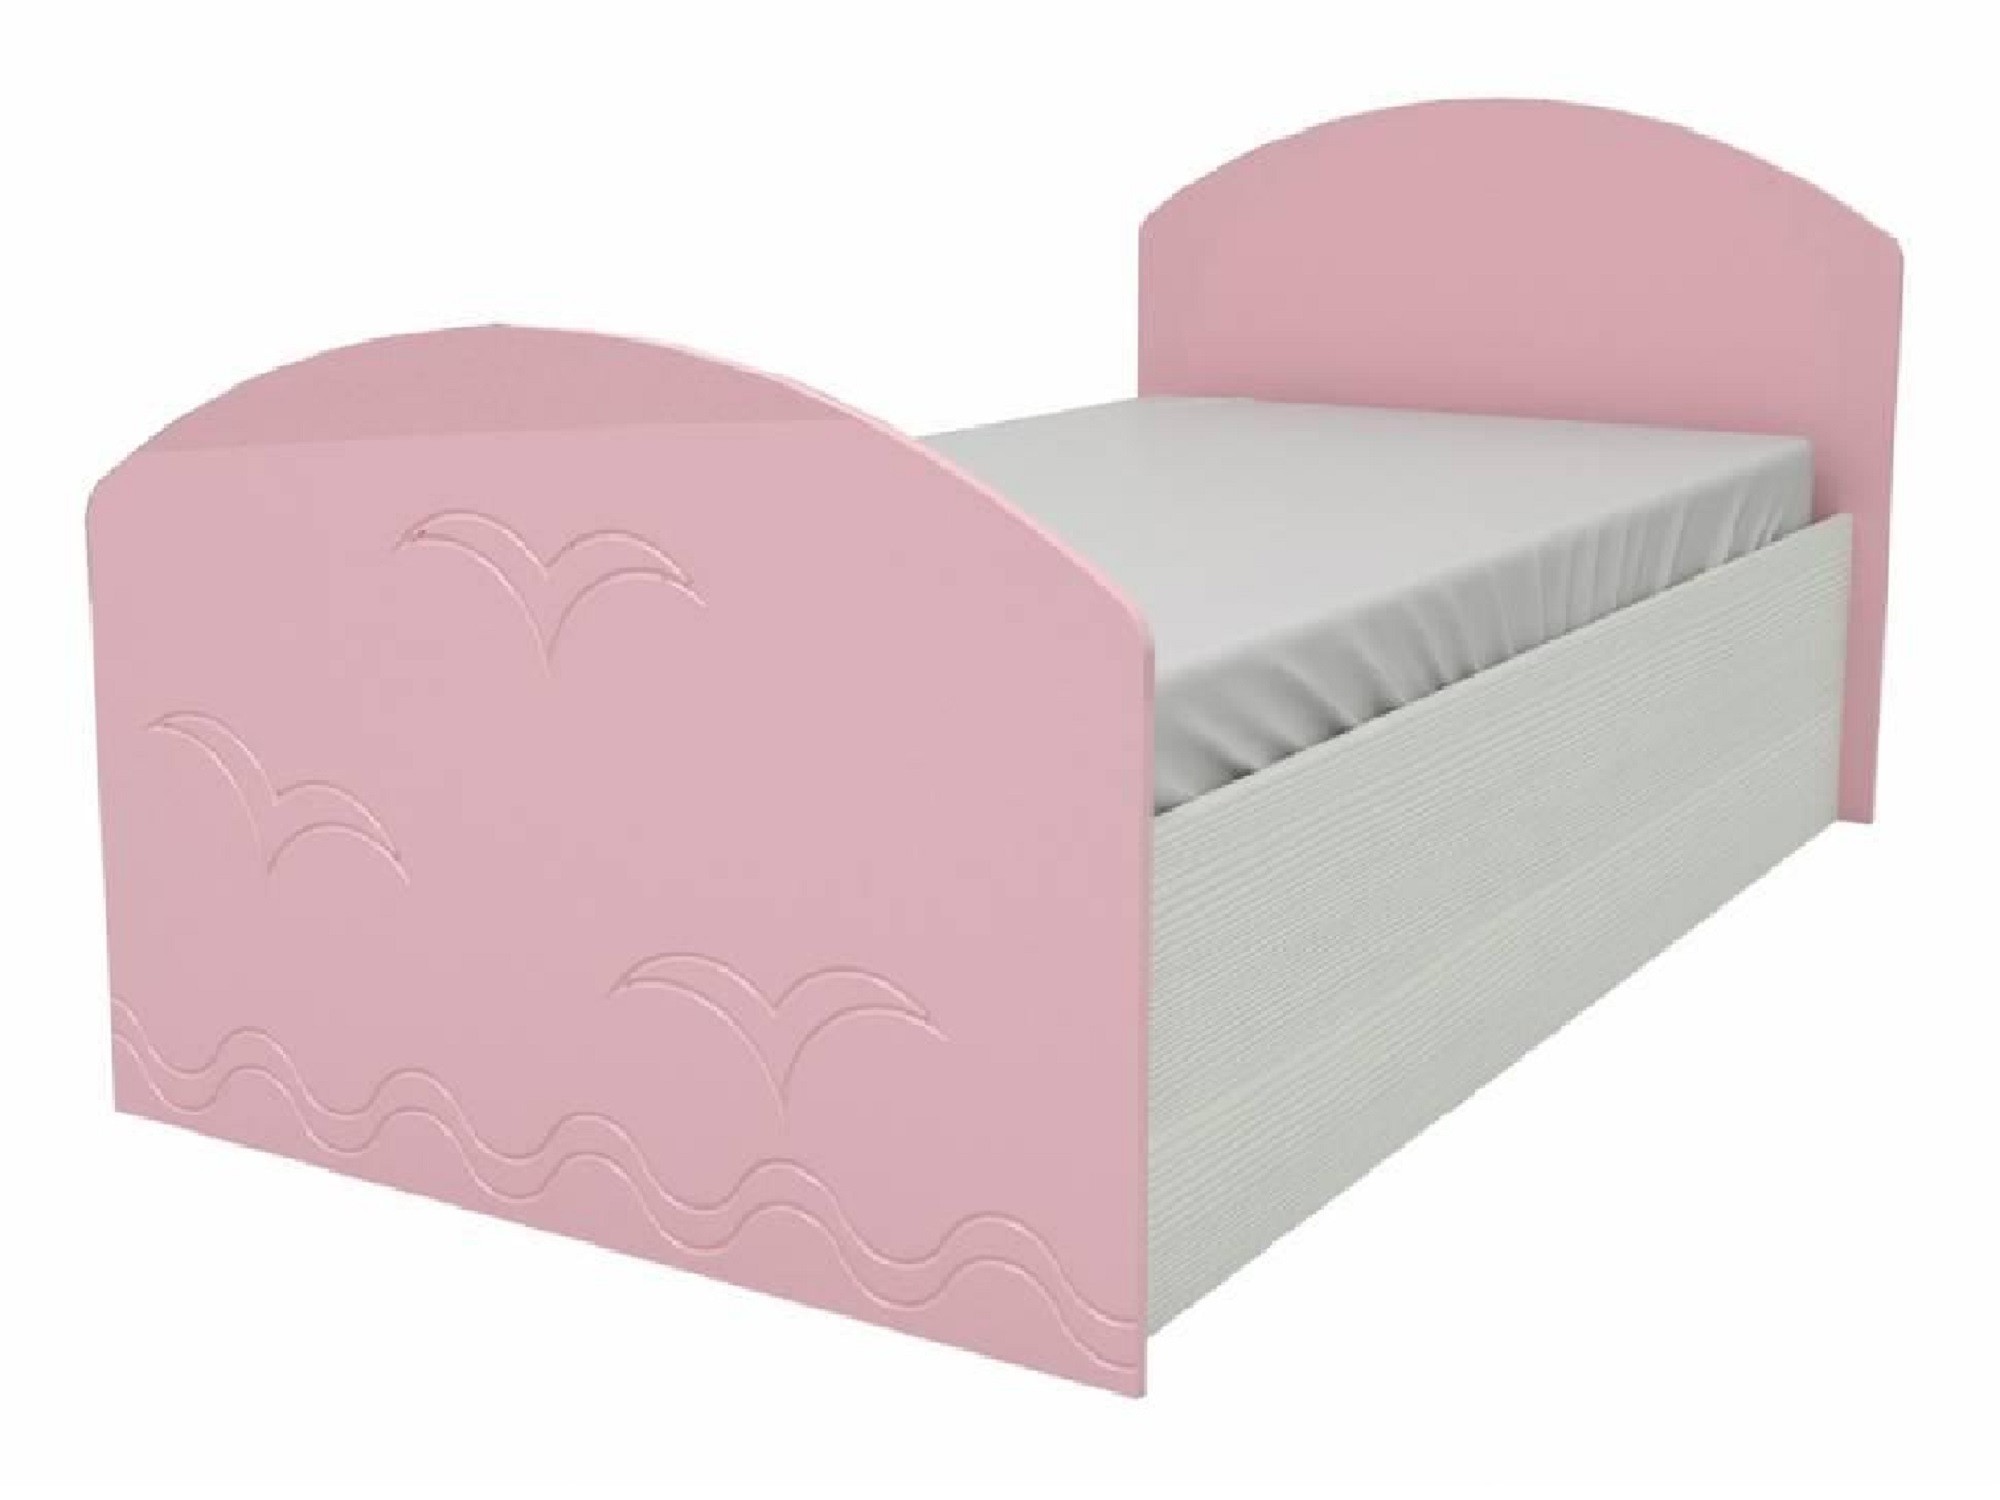 Юниор-2 Детская кровать 80, металлик (Розовый металлик, Дуб белёный) Дуб белёный, МДФ, ЛДСП юниор 2 детская кровать 80 металлик фиолетовый металлик дуб белёный дуб белёный мдф лдсп